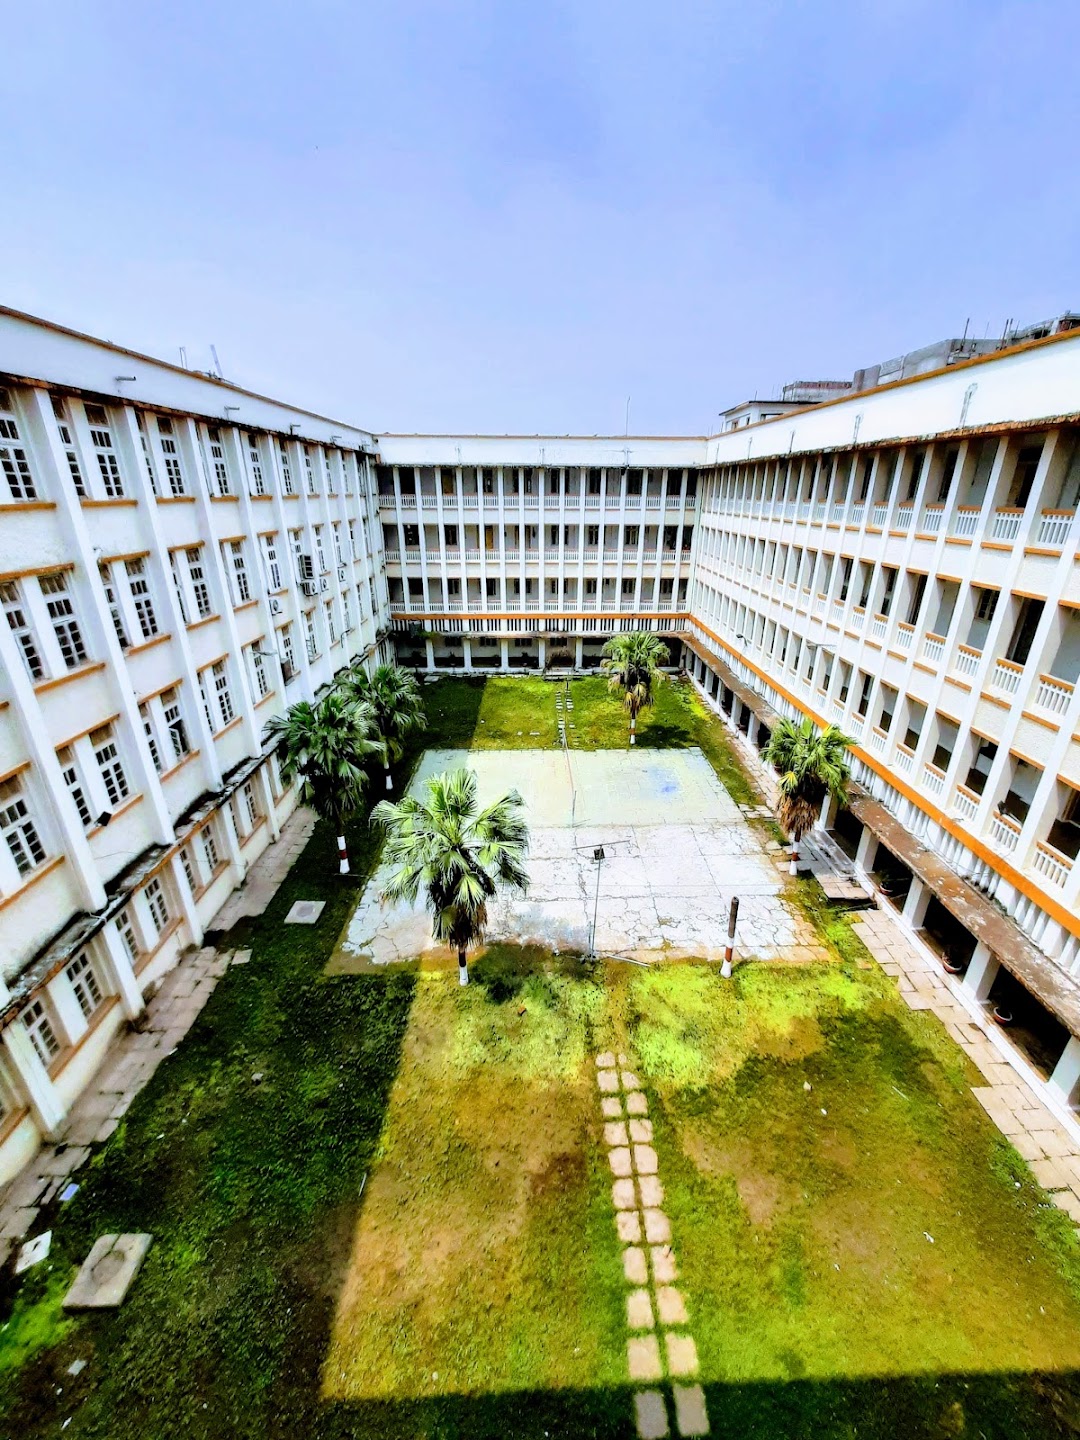 Netaji Subhash Chandra Bose Medical College